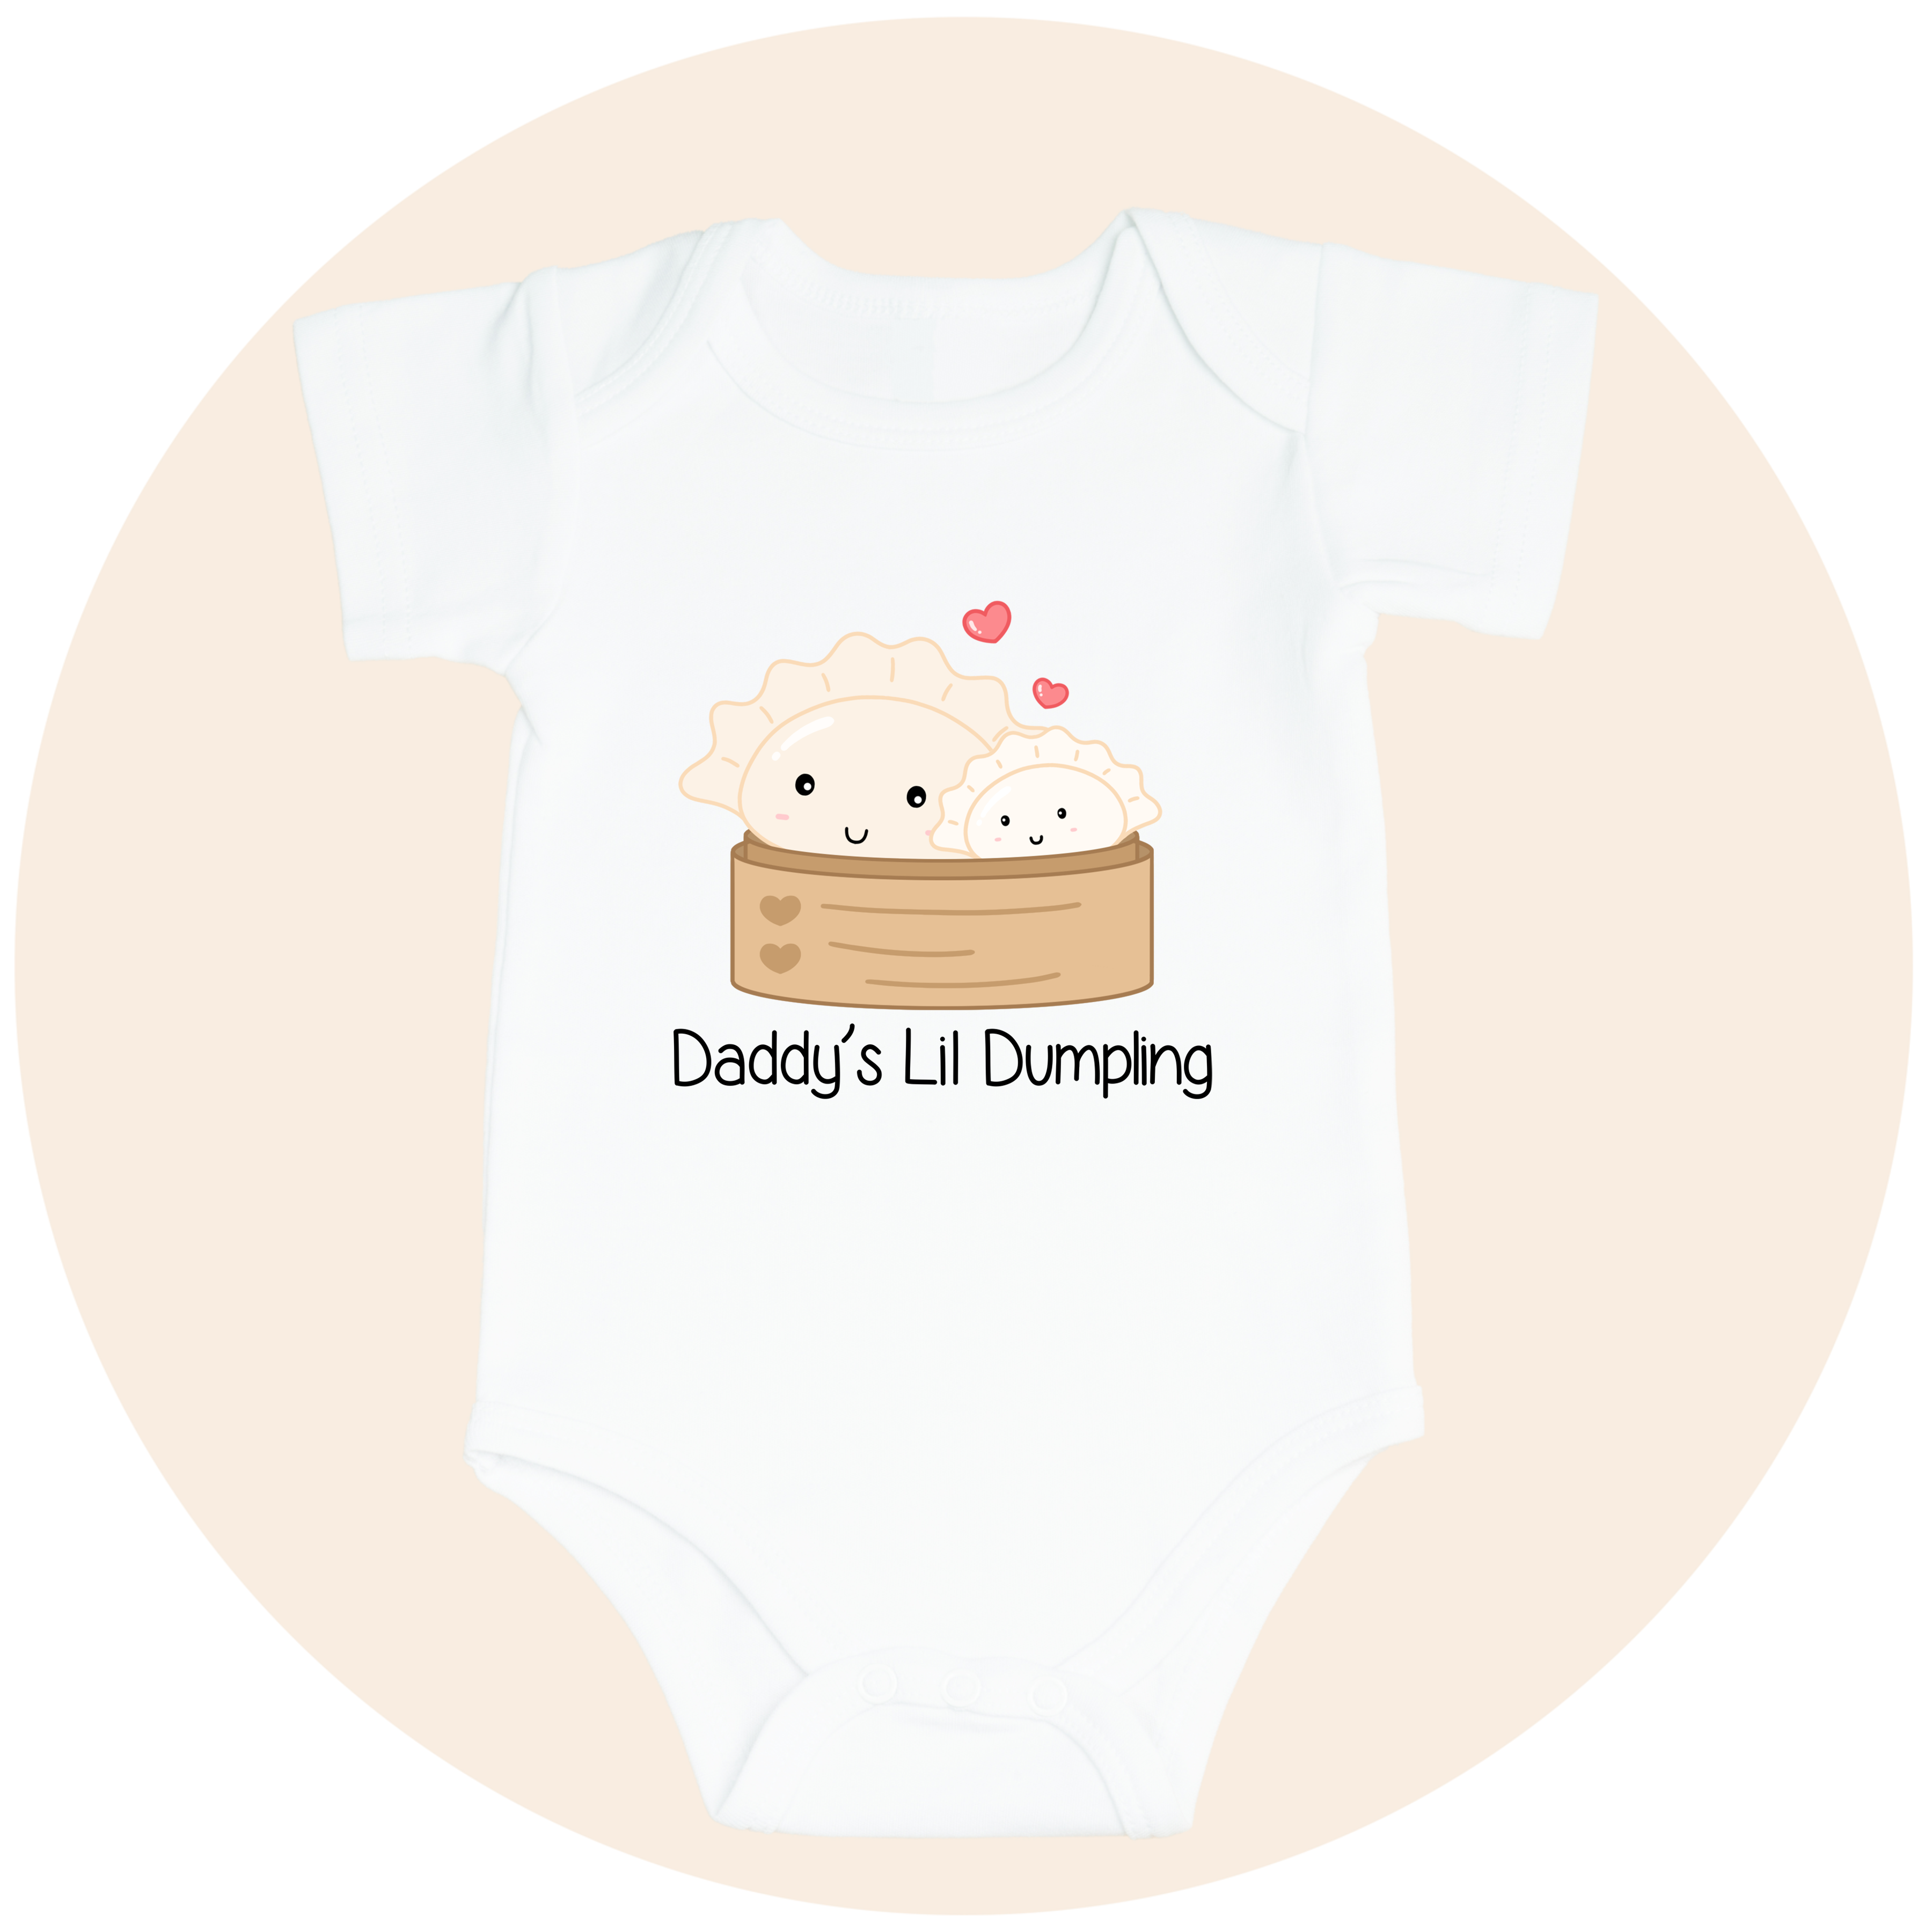 Daddy's Lil Dumpling